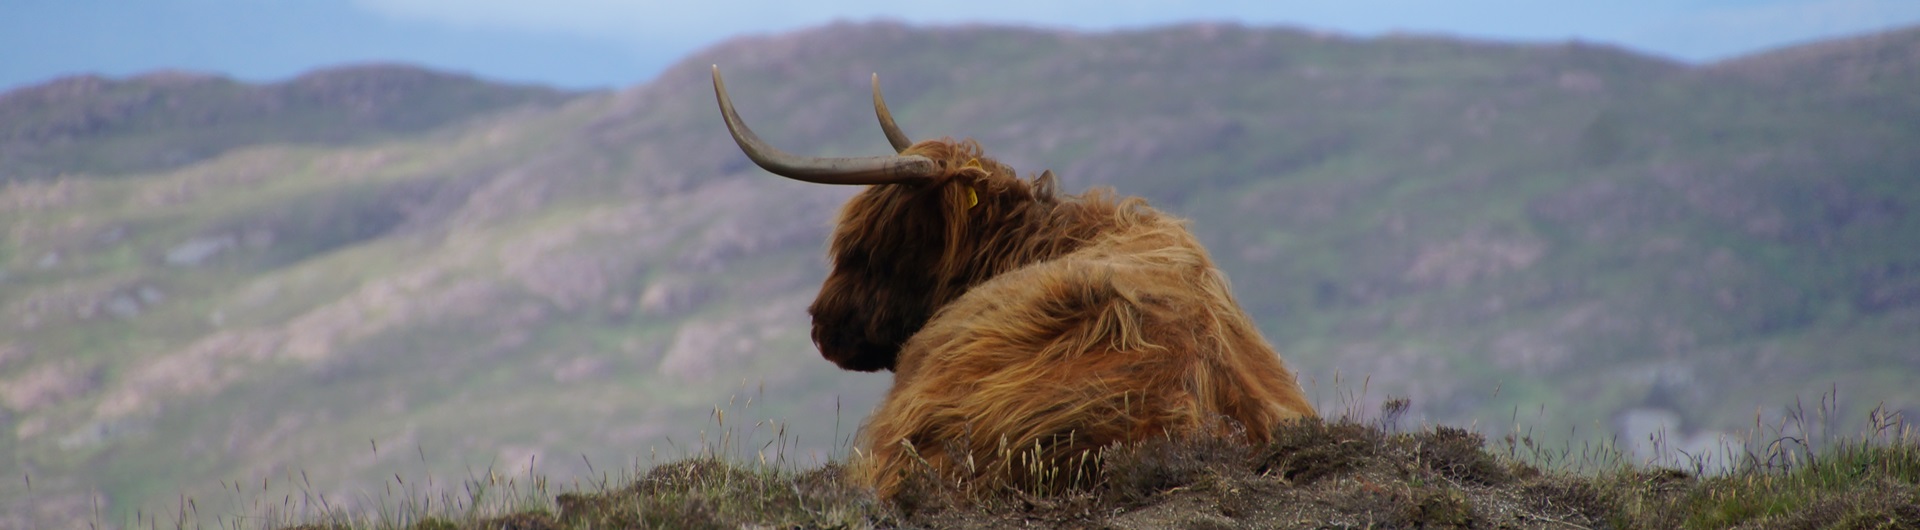 Landscape-Highland-Cow-Header